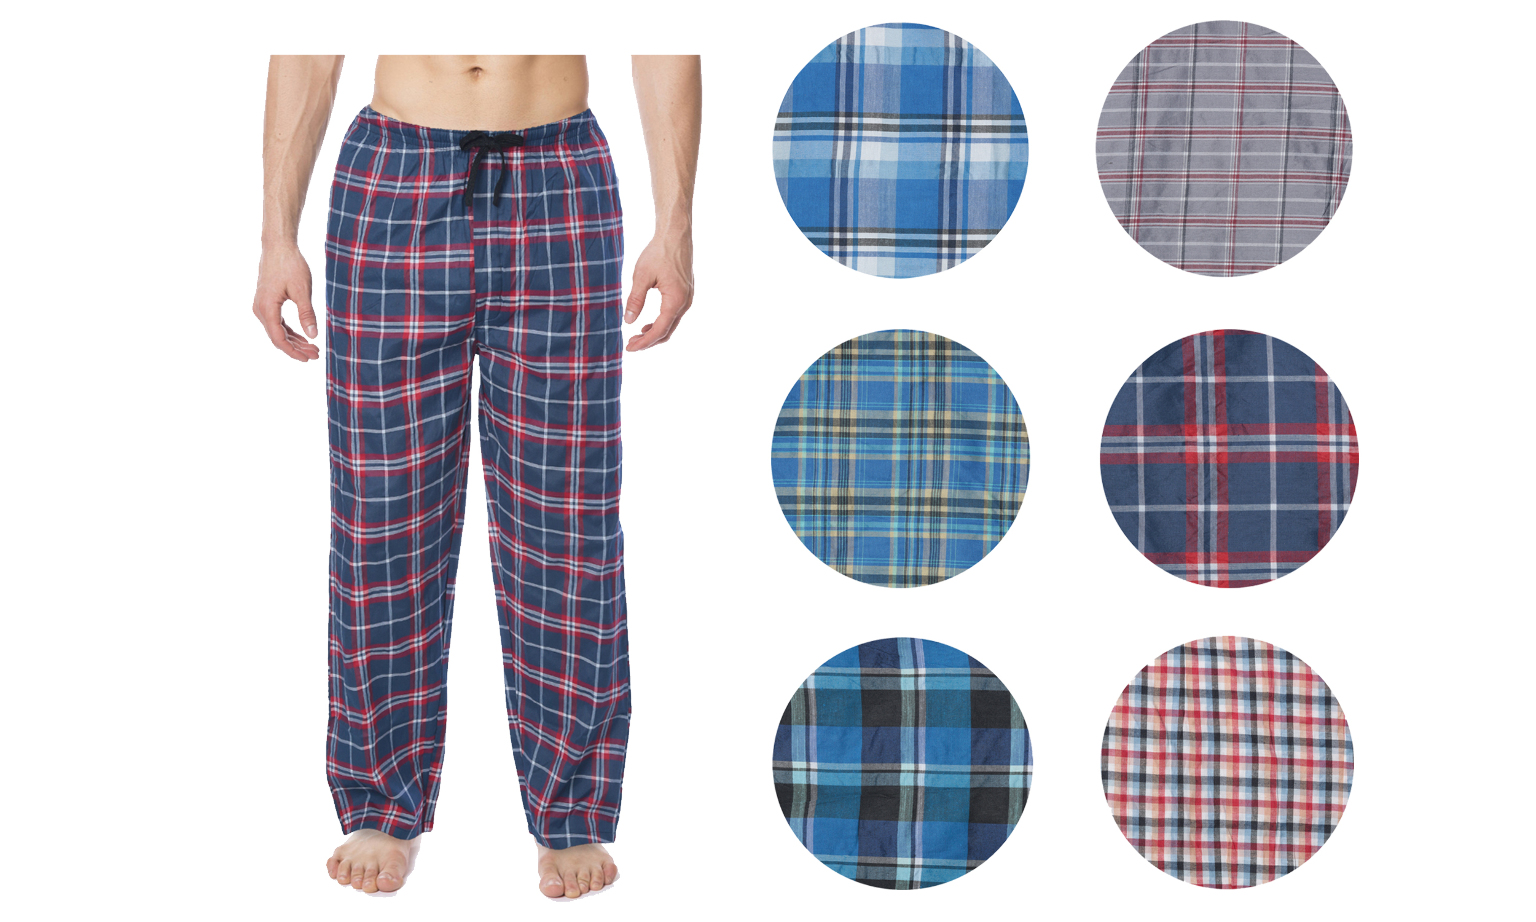 Bulk Men's Pajama Bottoms - Wholesale Cotton Sleepwear, Plaid Pajamas